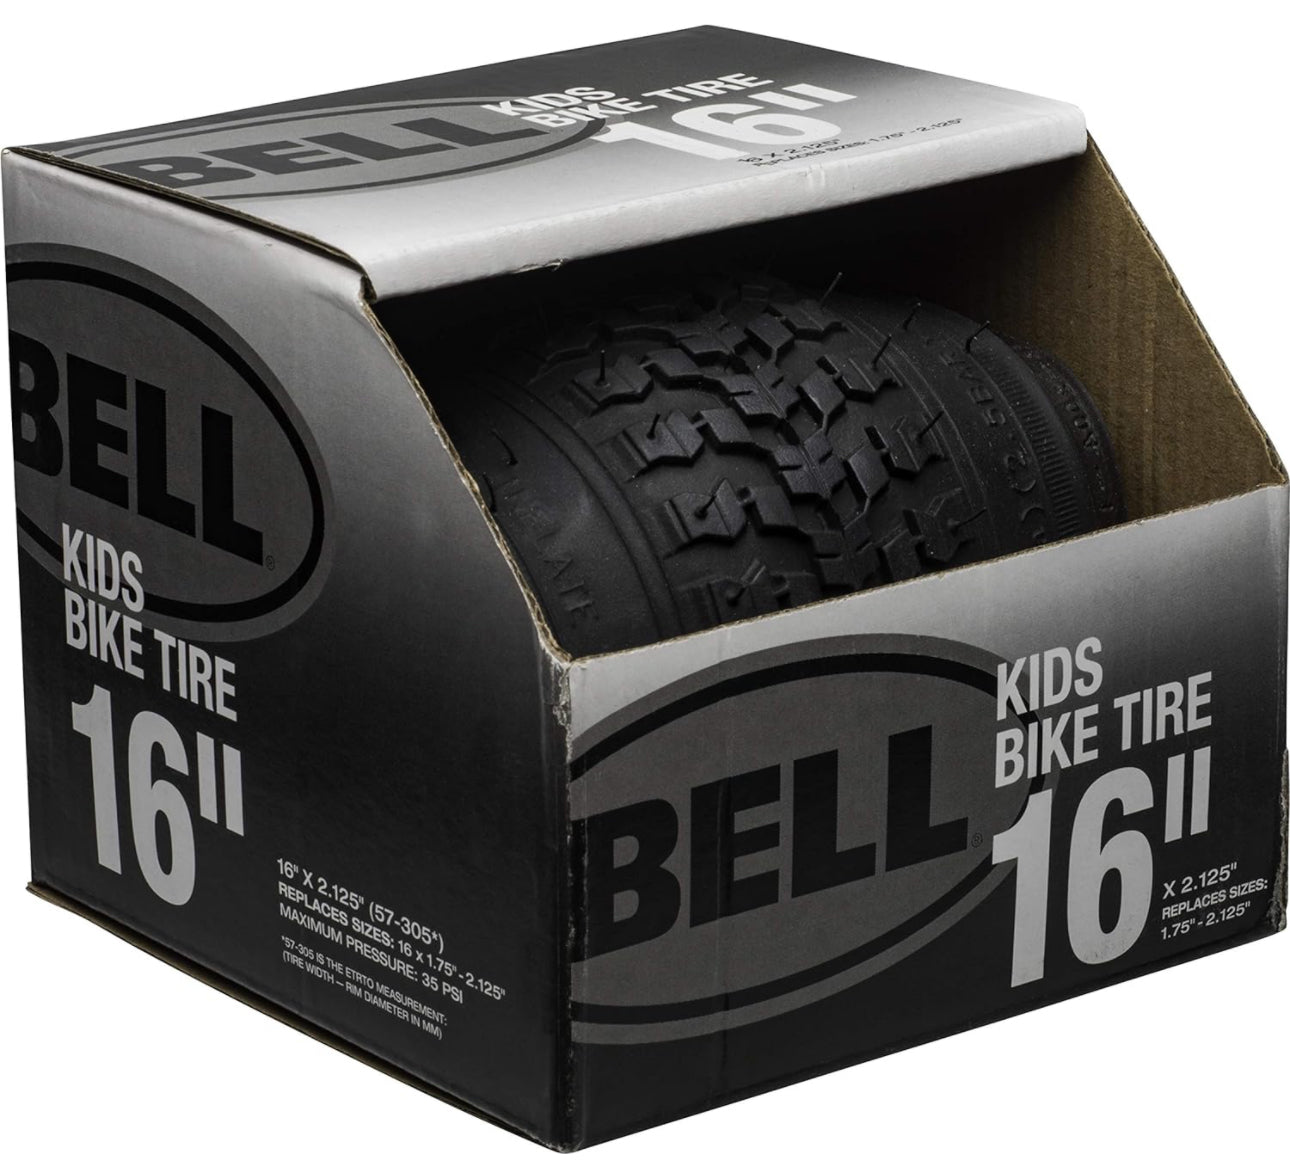 BELL Bike Tire 16” x 2.125”